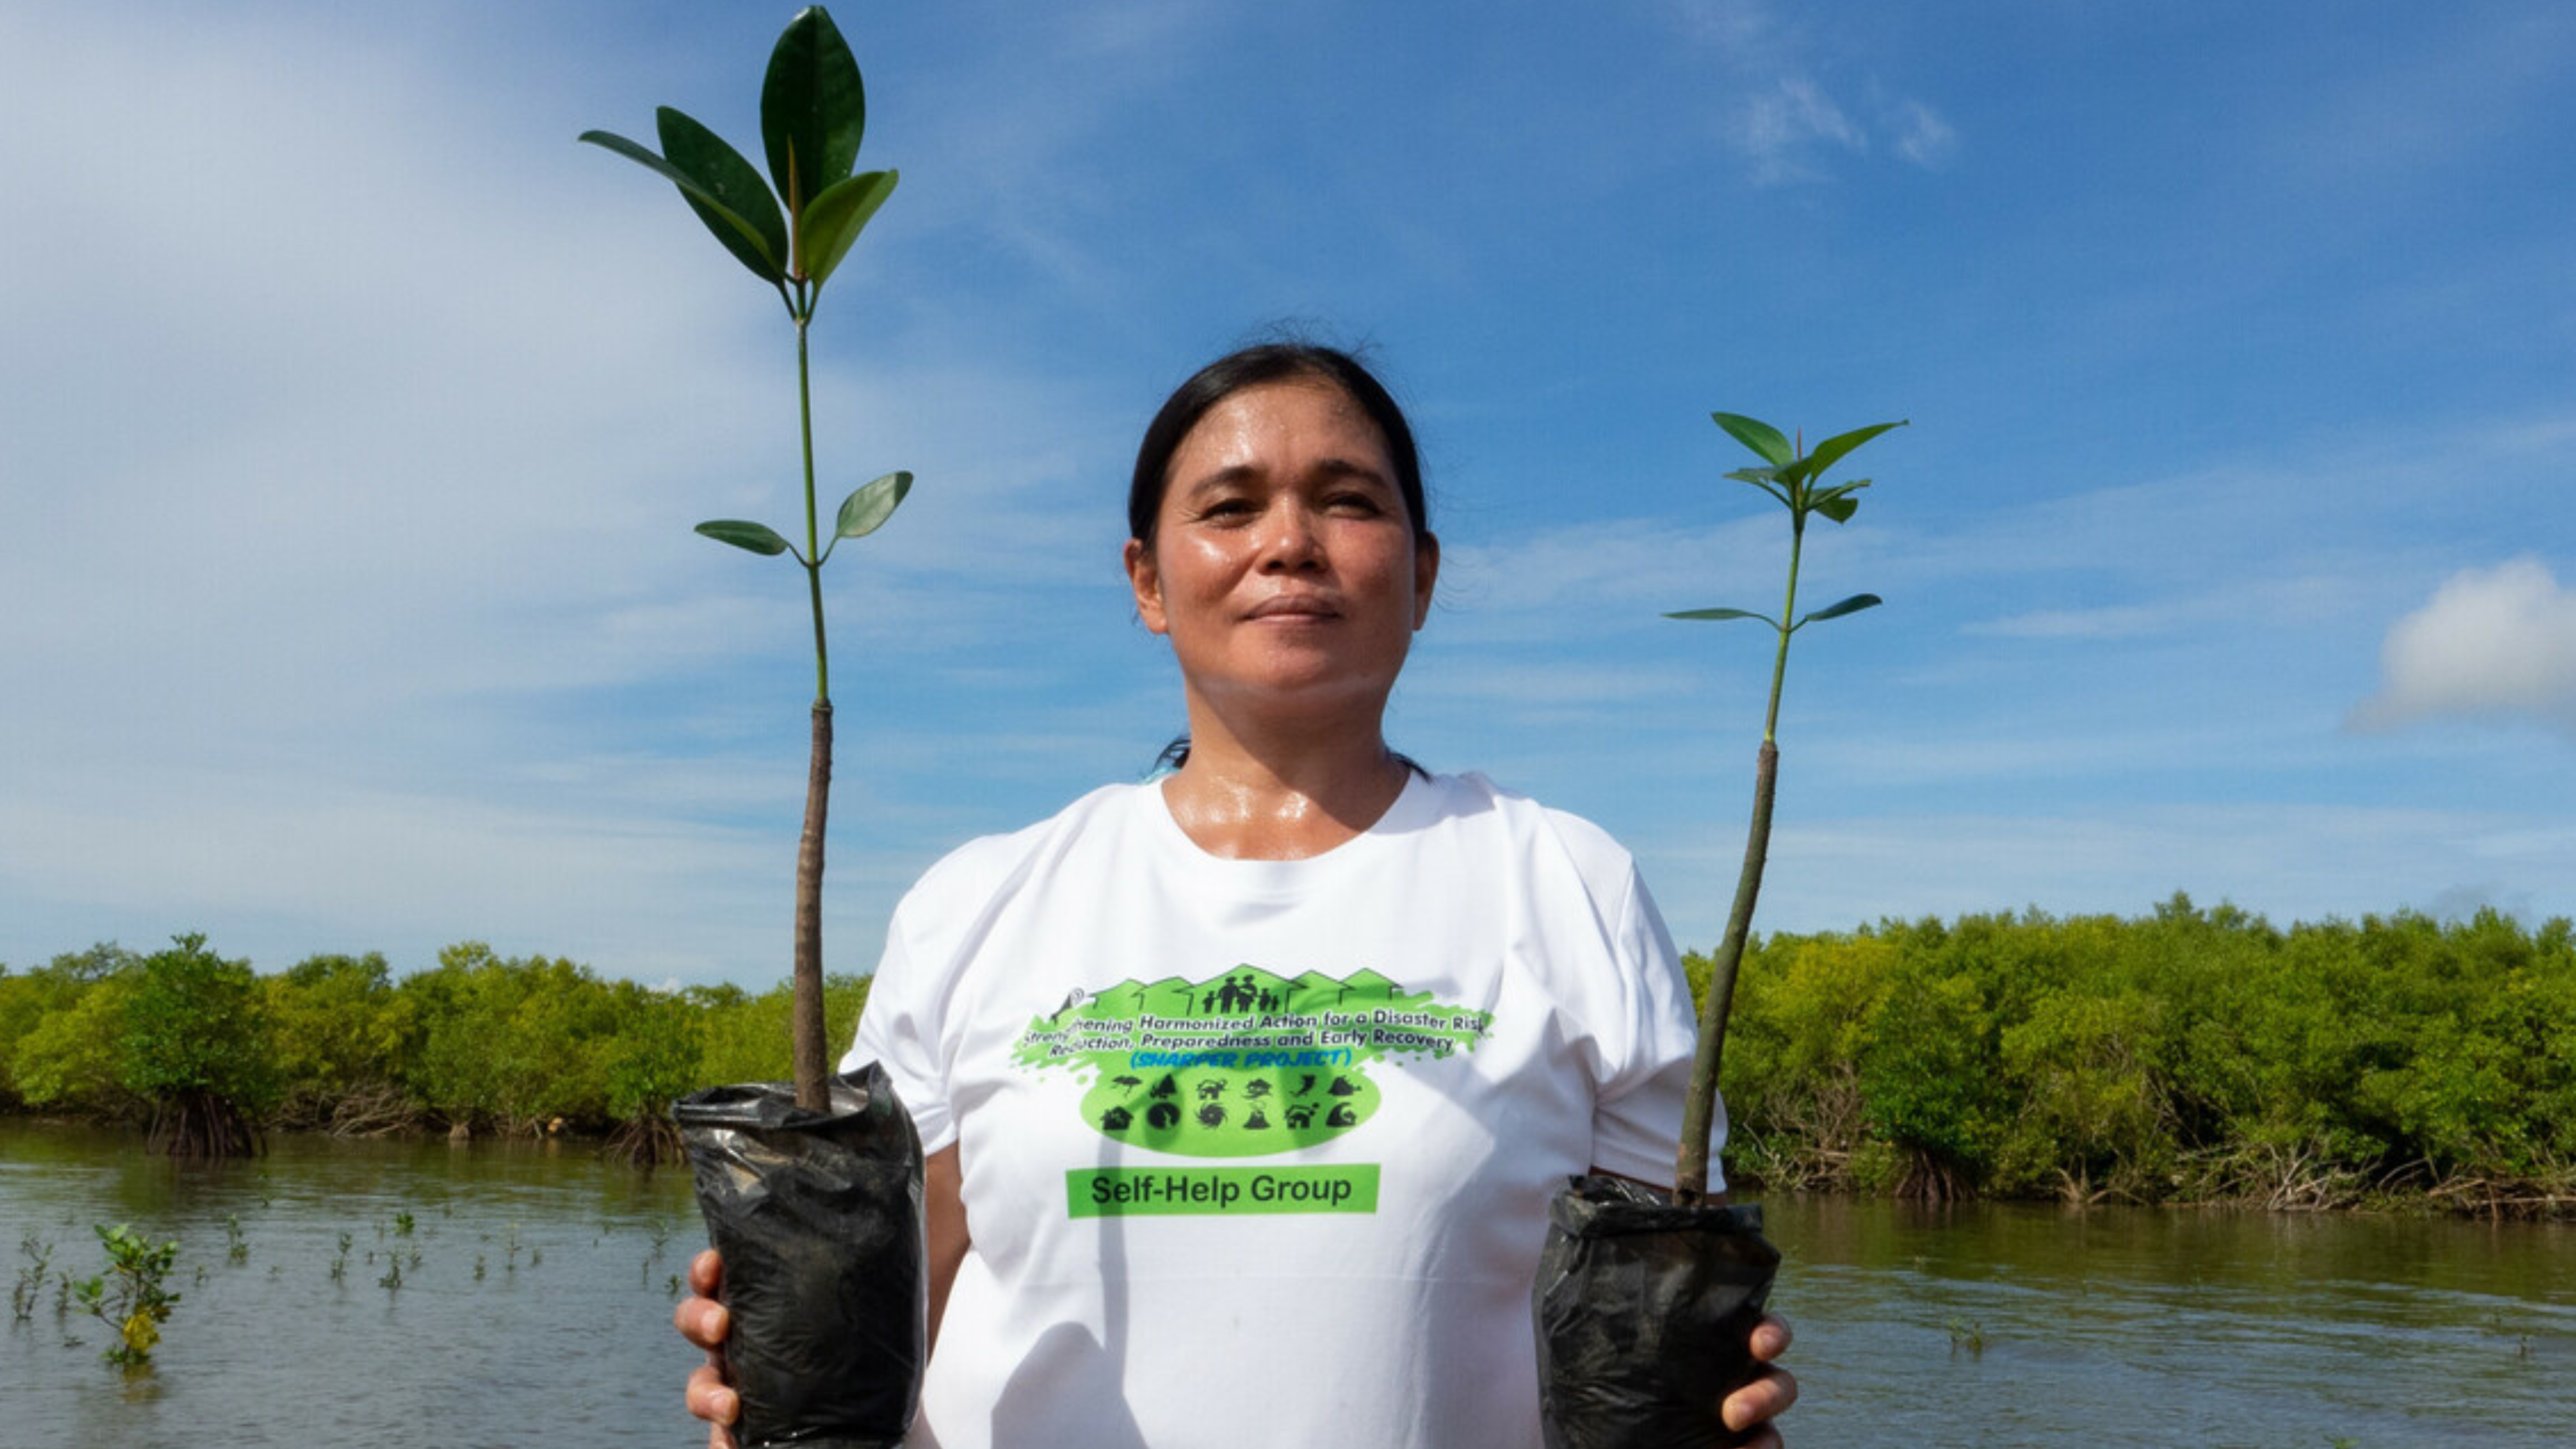 Rowena Obina ist Mitglied einer Frauengruppe, die sich um die Wiederherstellung von Mangroven kümmert. Das Projekt soll die Gemeinde unter anderem vor starken Stürmen schützen. Oxfam und der Partner SIKAT haben ihre Frauengruppe geschult und das Projekt unterstützt.